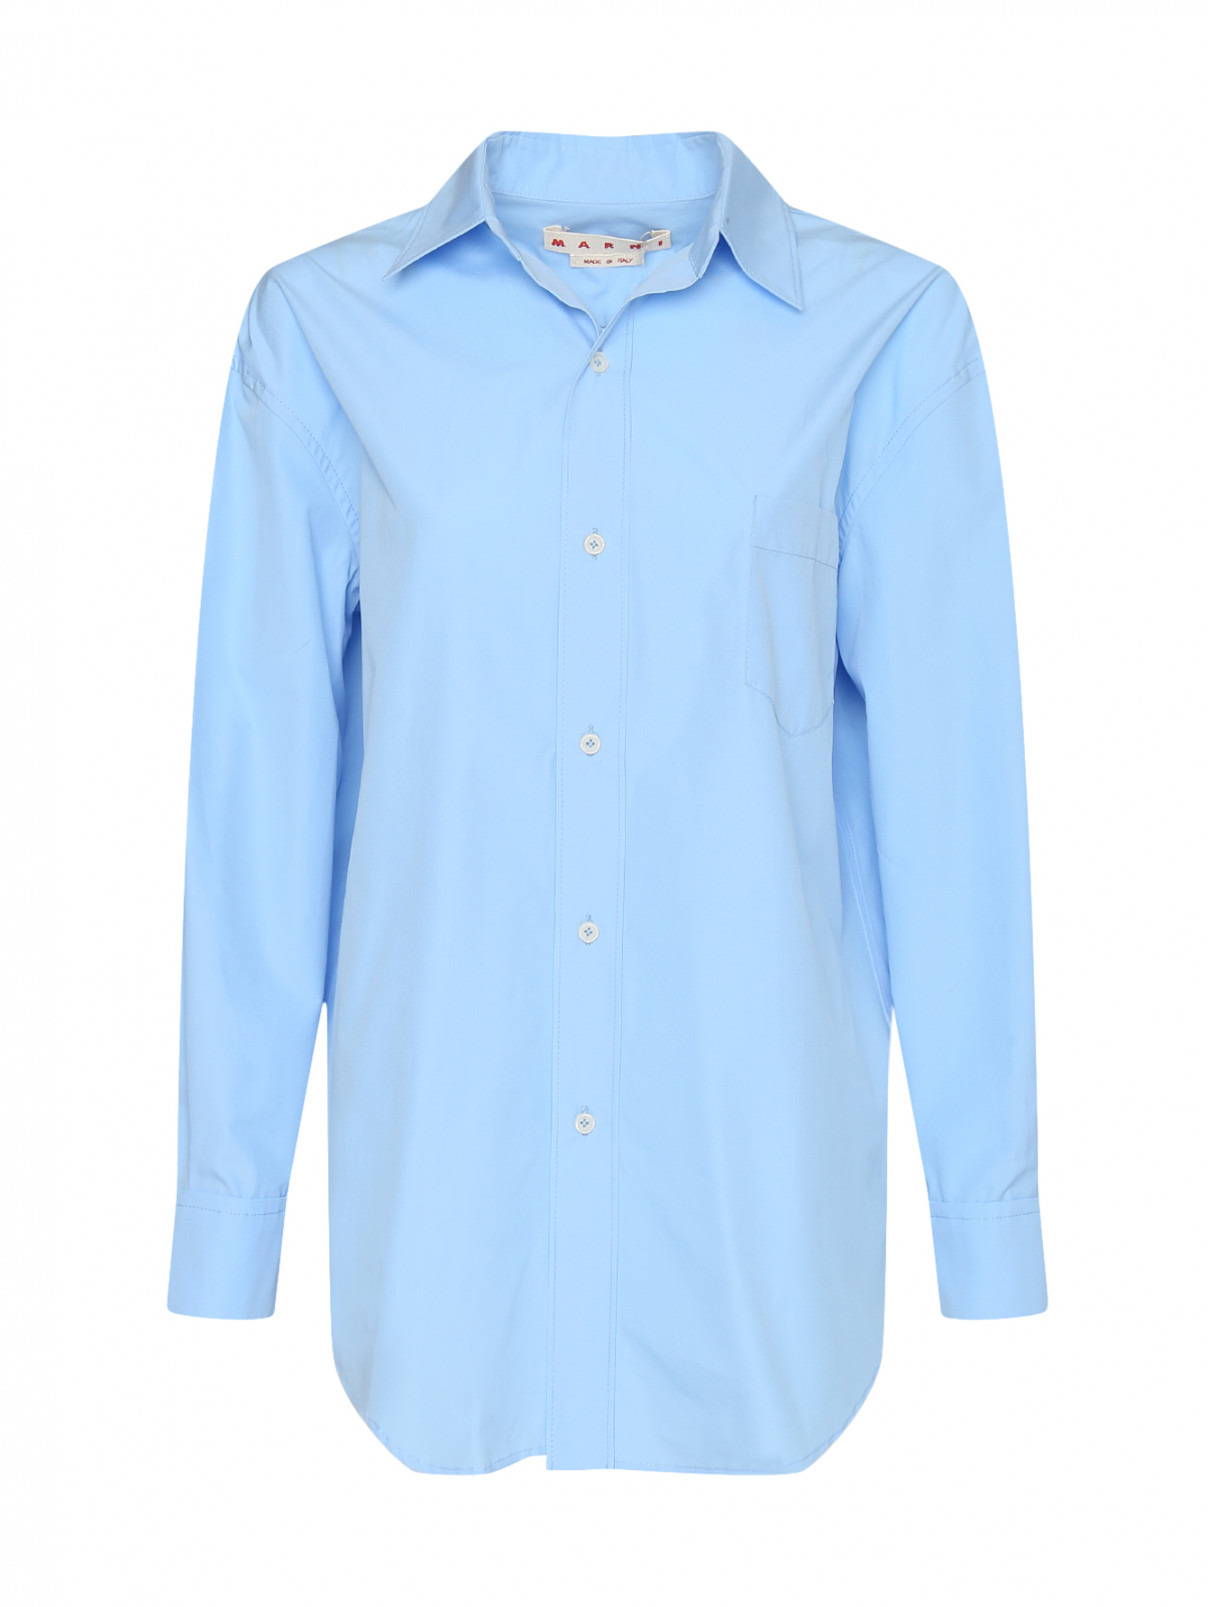 Рубашка из хлопка свободного кроя со складками на спине Marni  –  Общий вид  – Цвет:  Синий